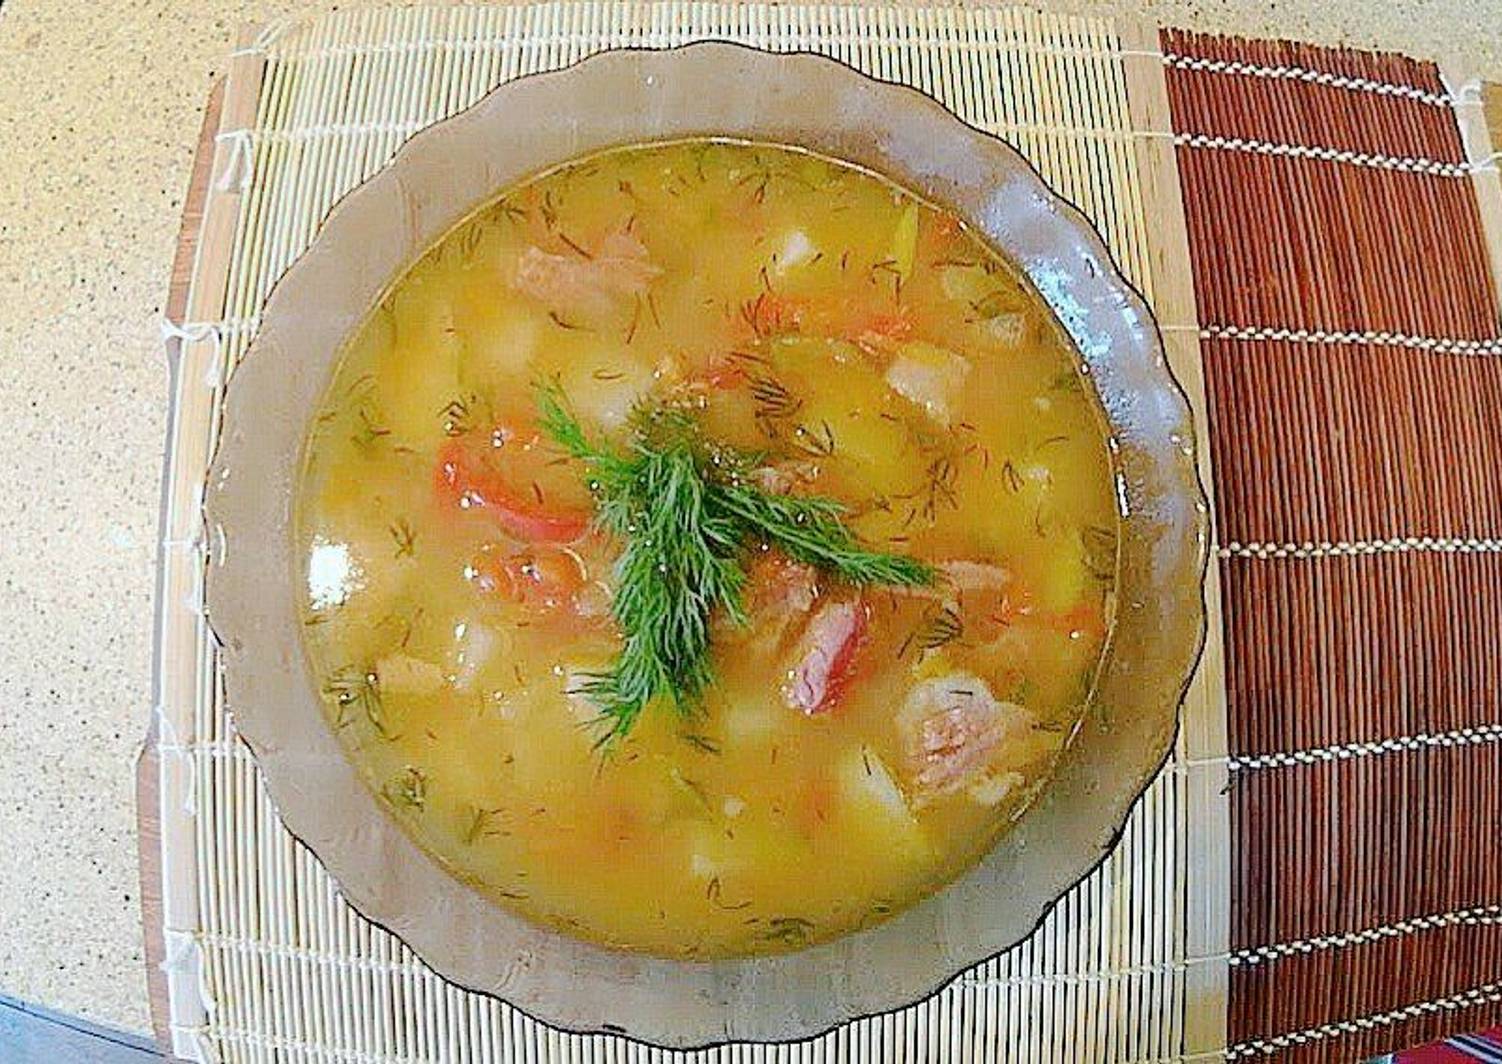 Копченый суп с горохом